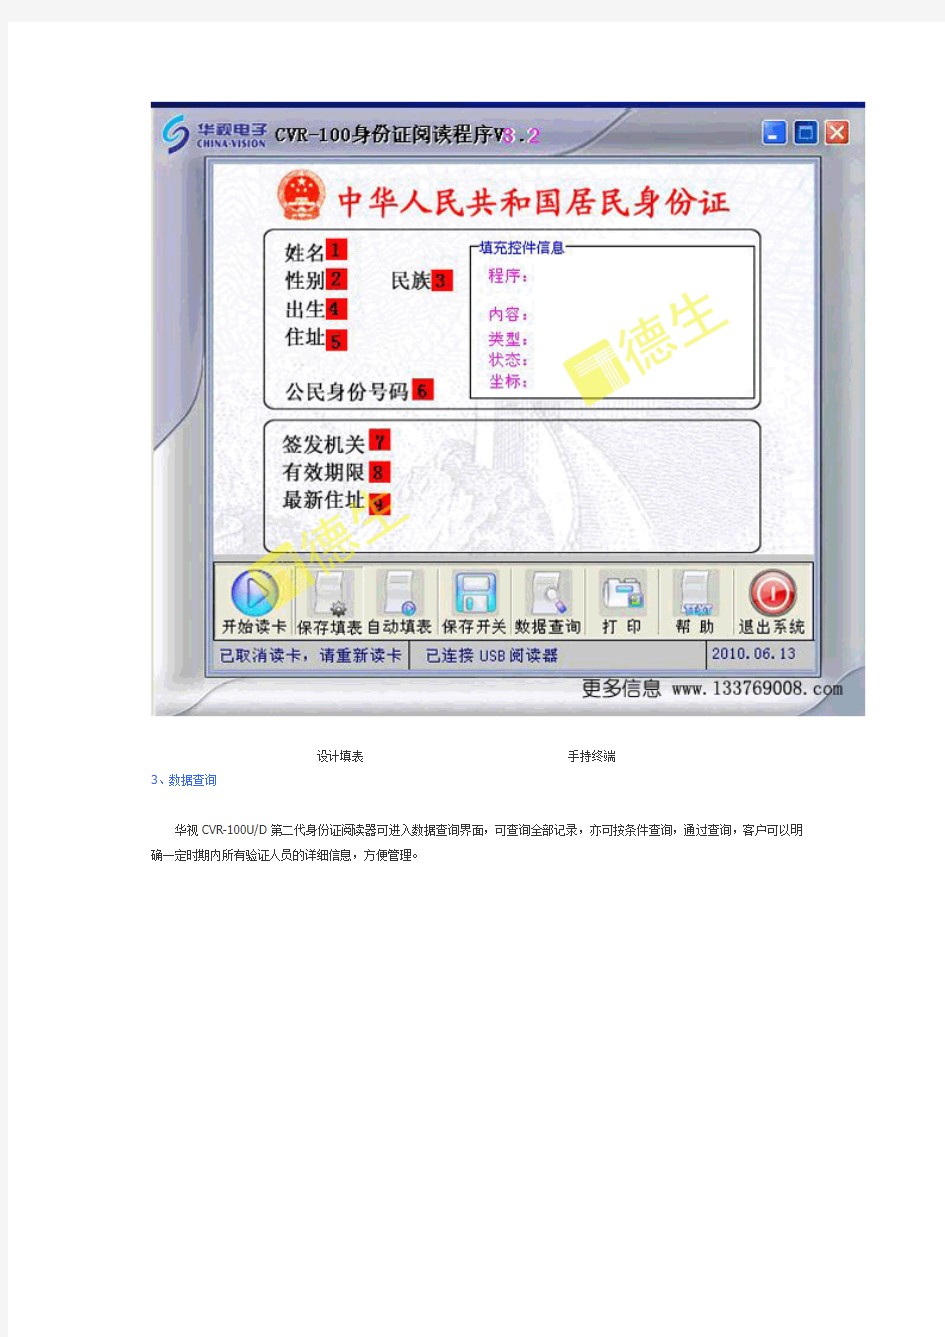 华视CVR100身份证阅读器产品说明书